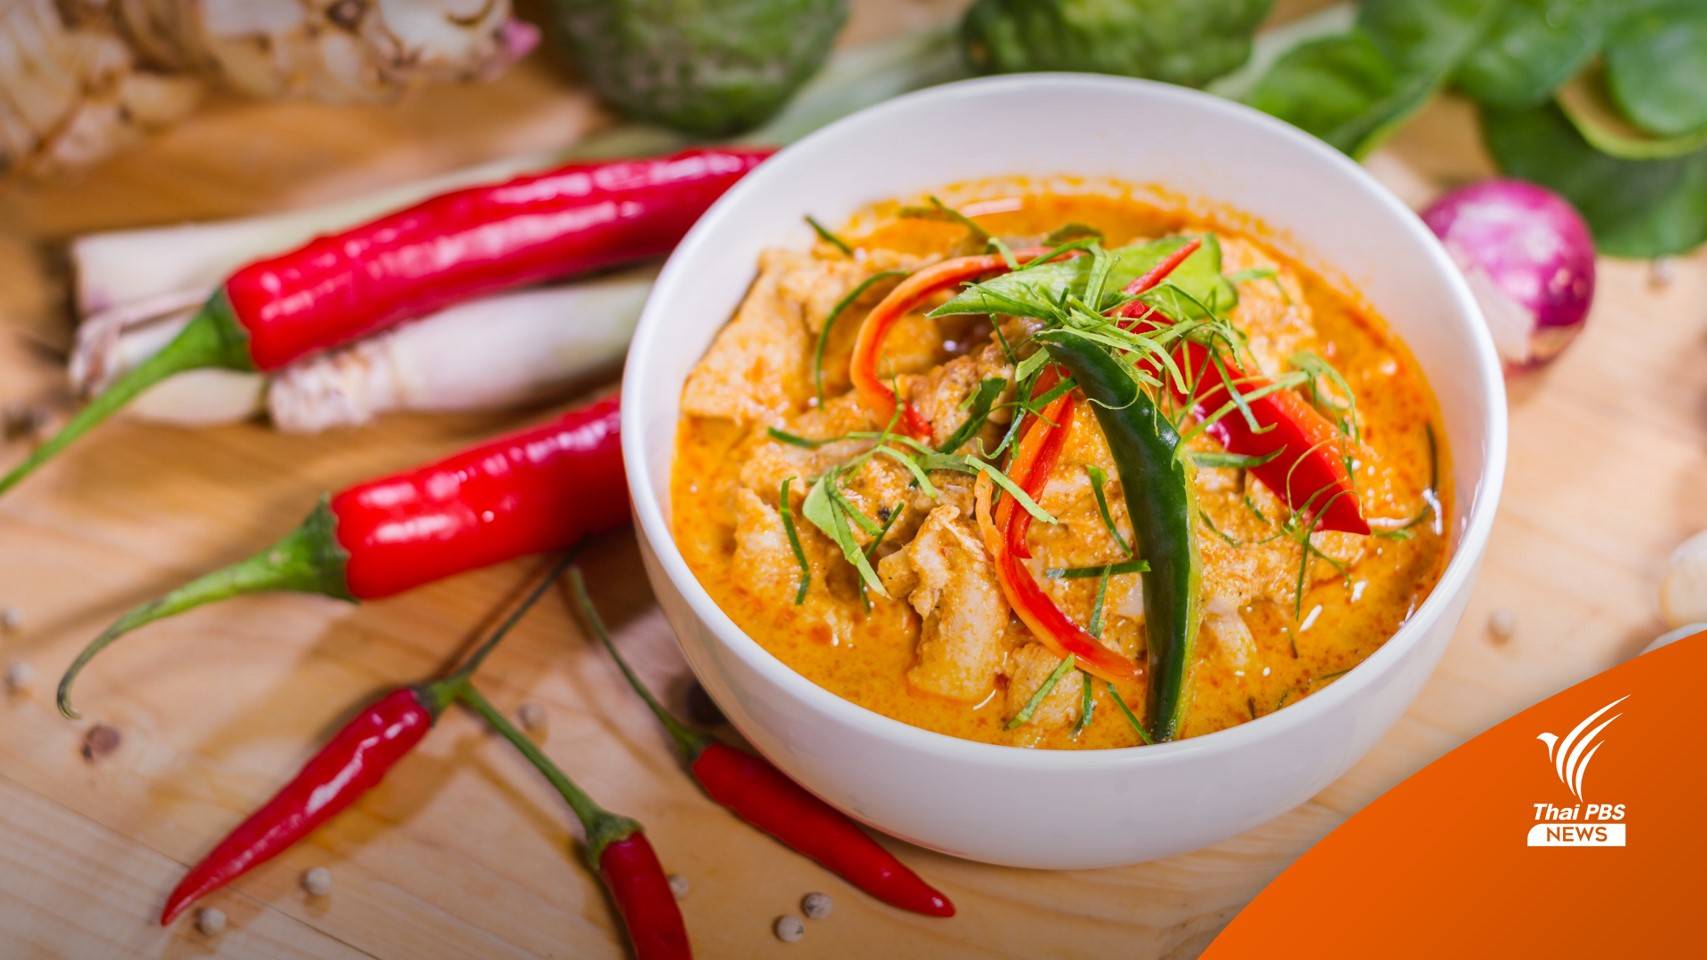 เชฟอาหารไทยปลื้ม "แกงพะแนง" ติดอันดับ 1 ของโลก 